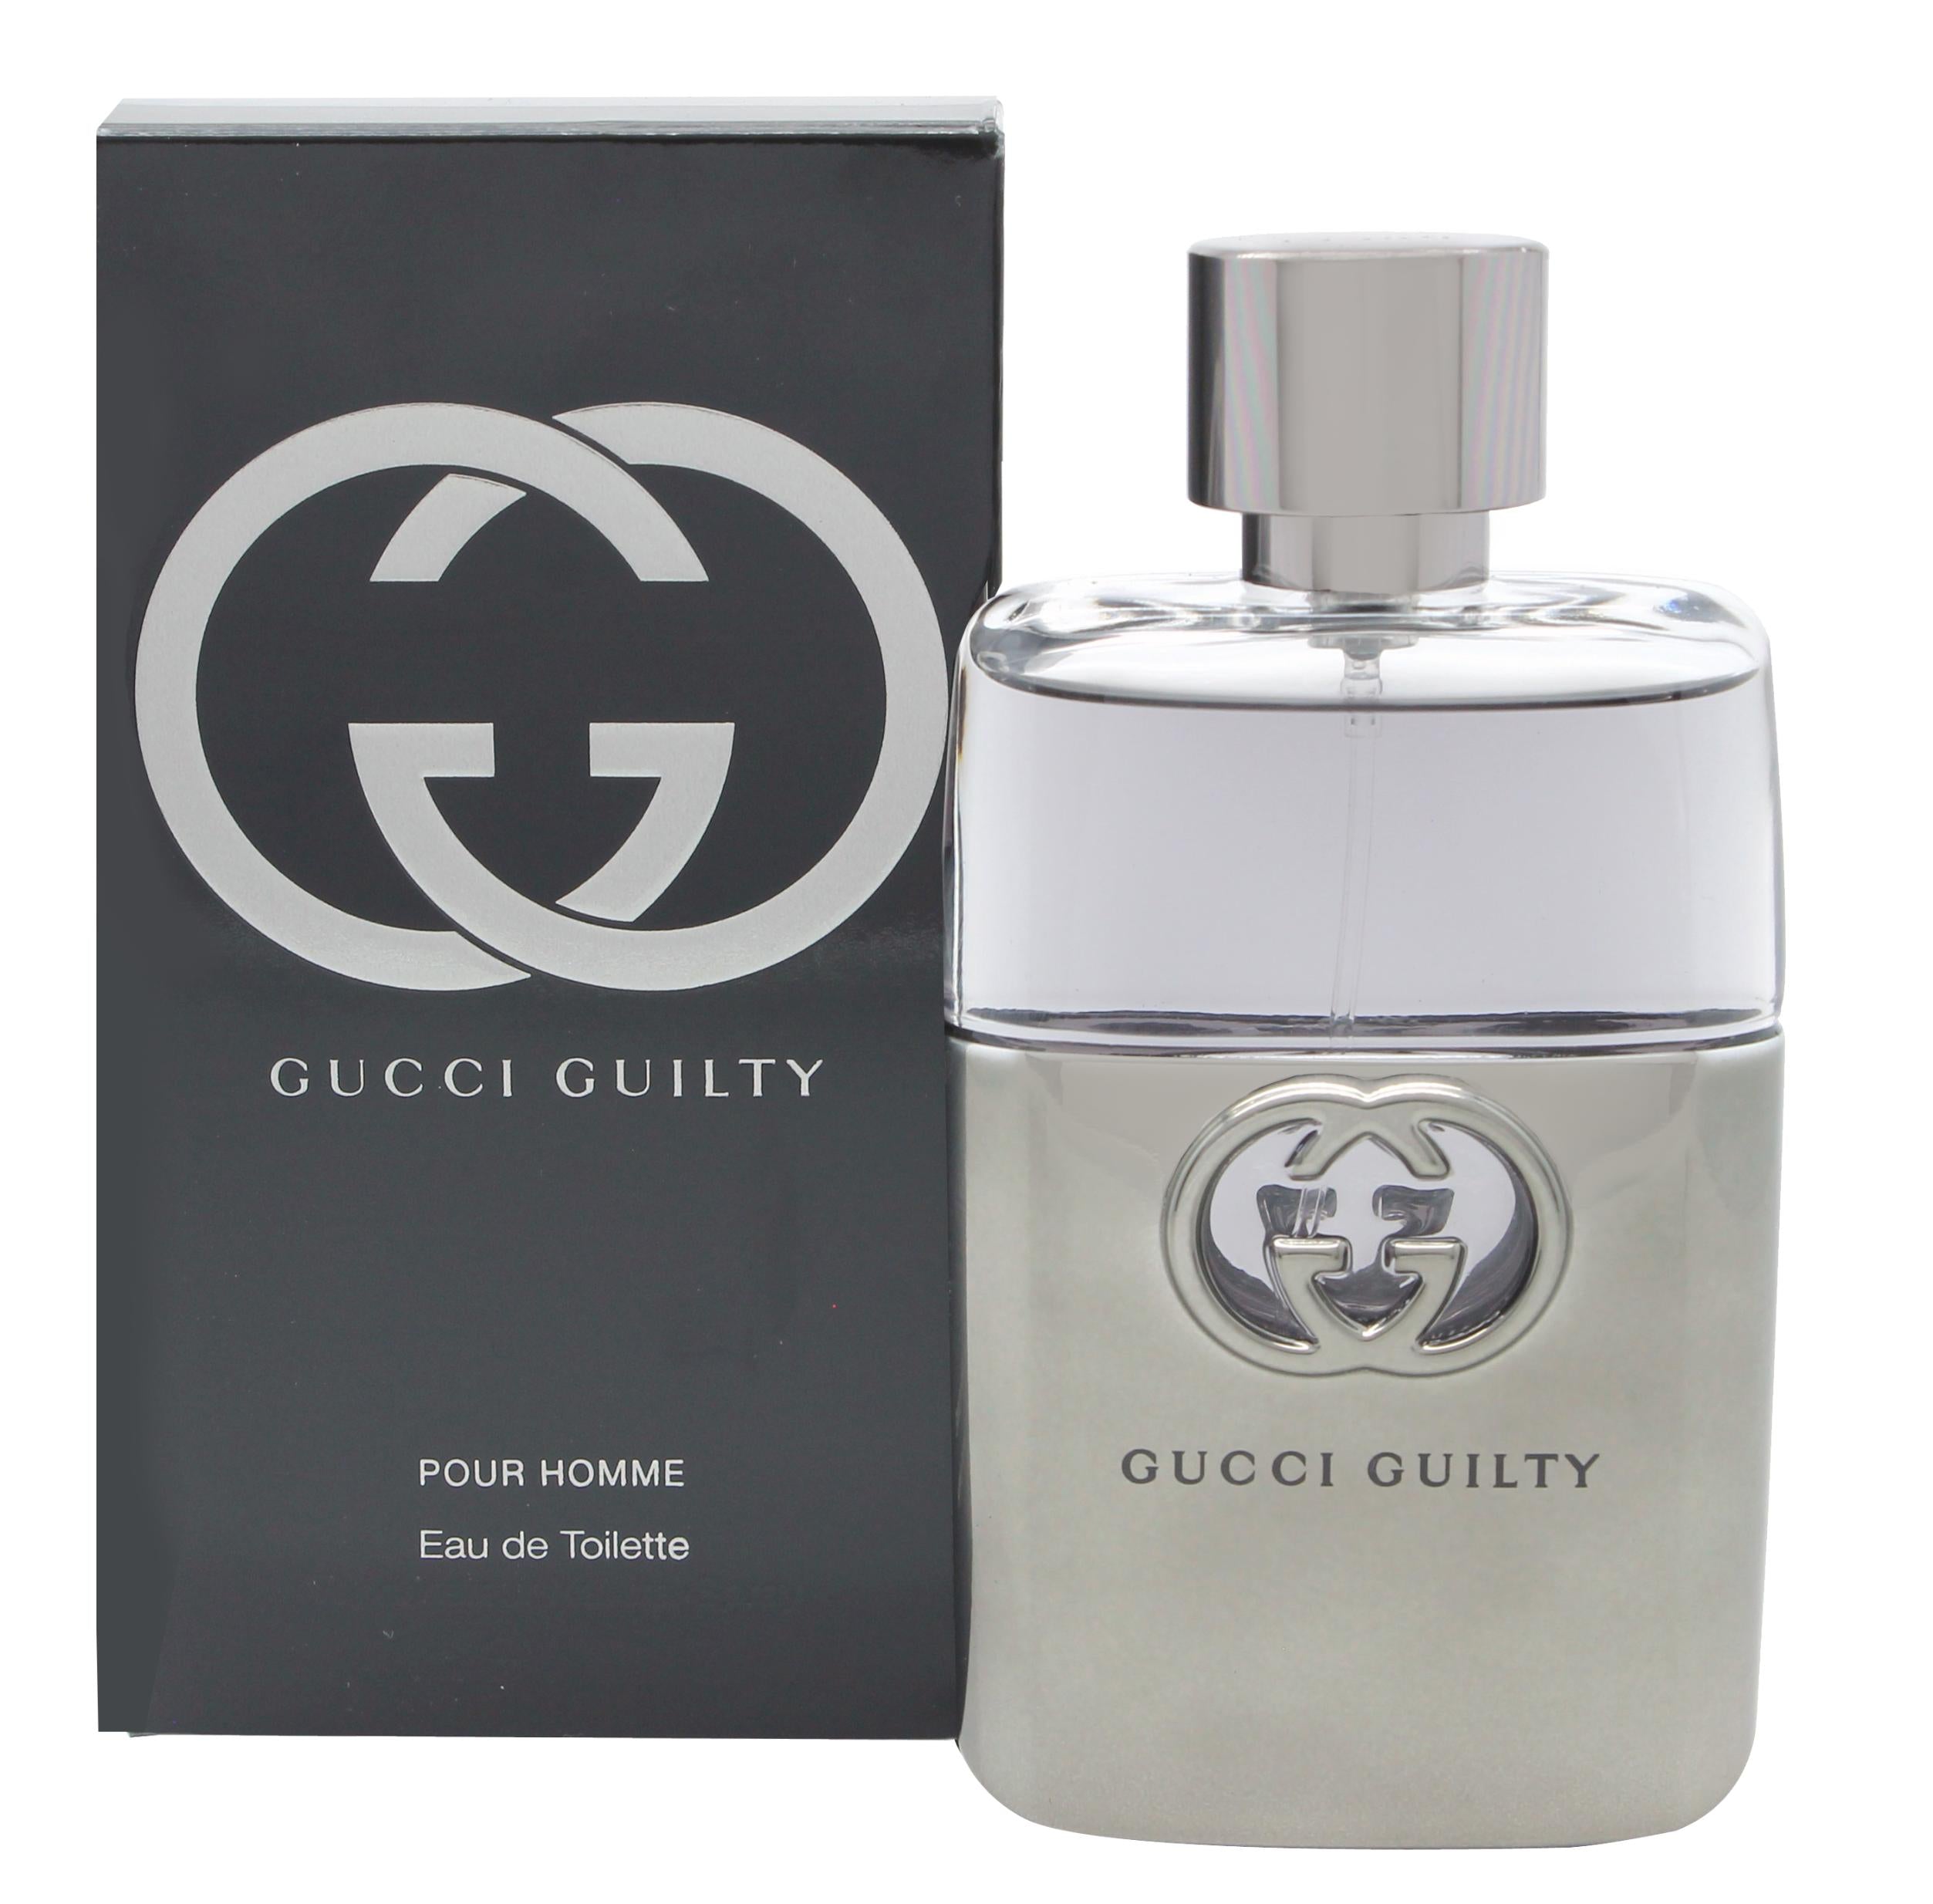 View Gucci Guilty Pour Homme Eau de Toilette 50ml Spray information